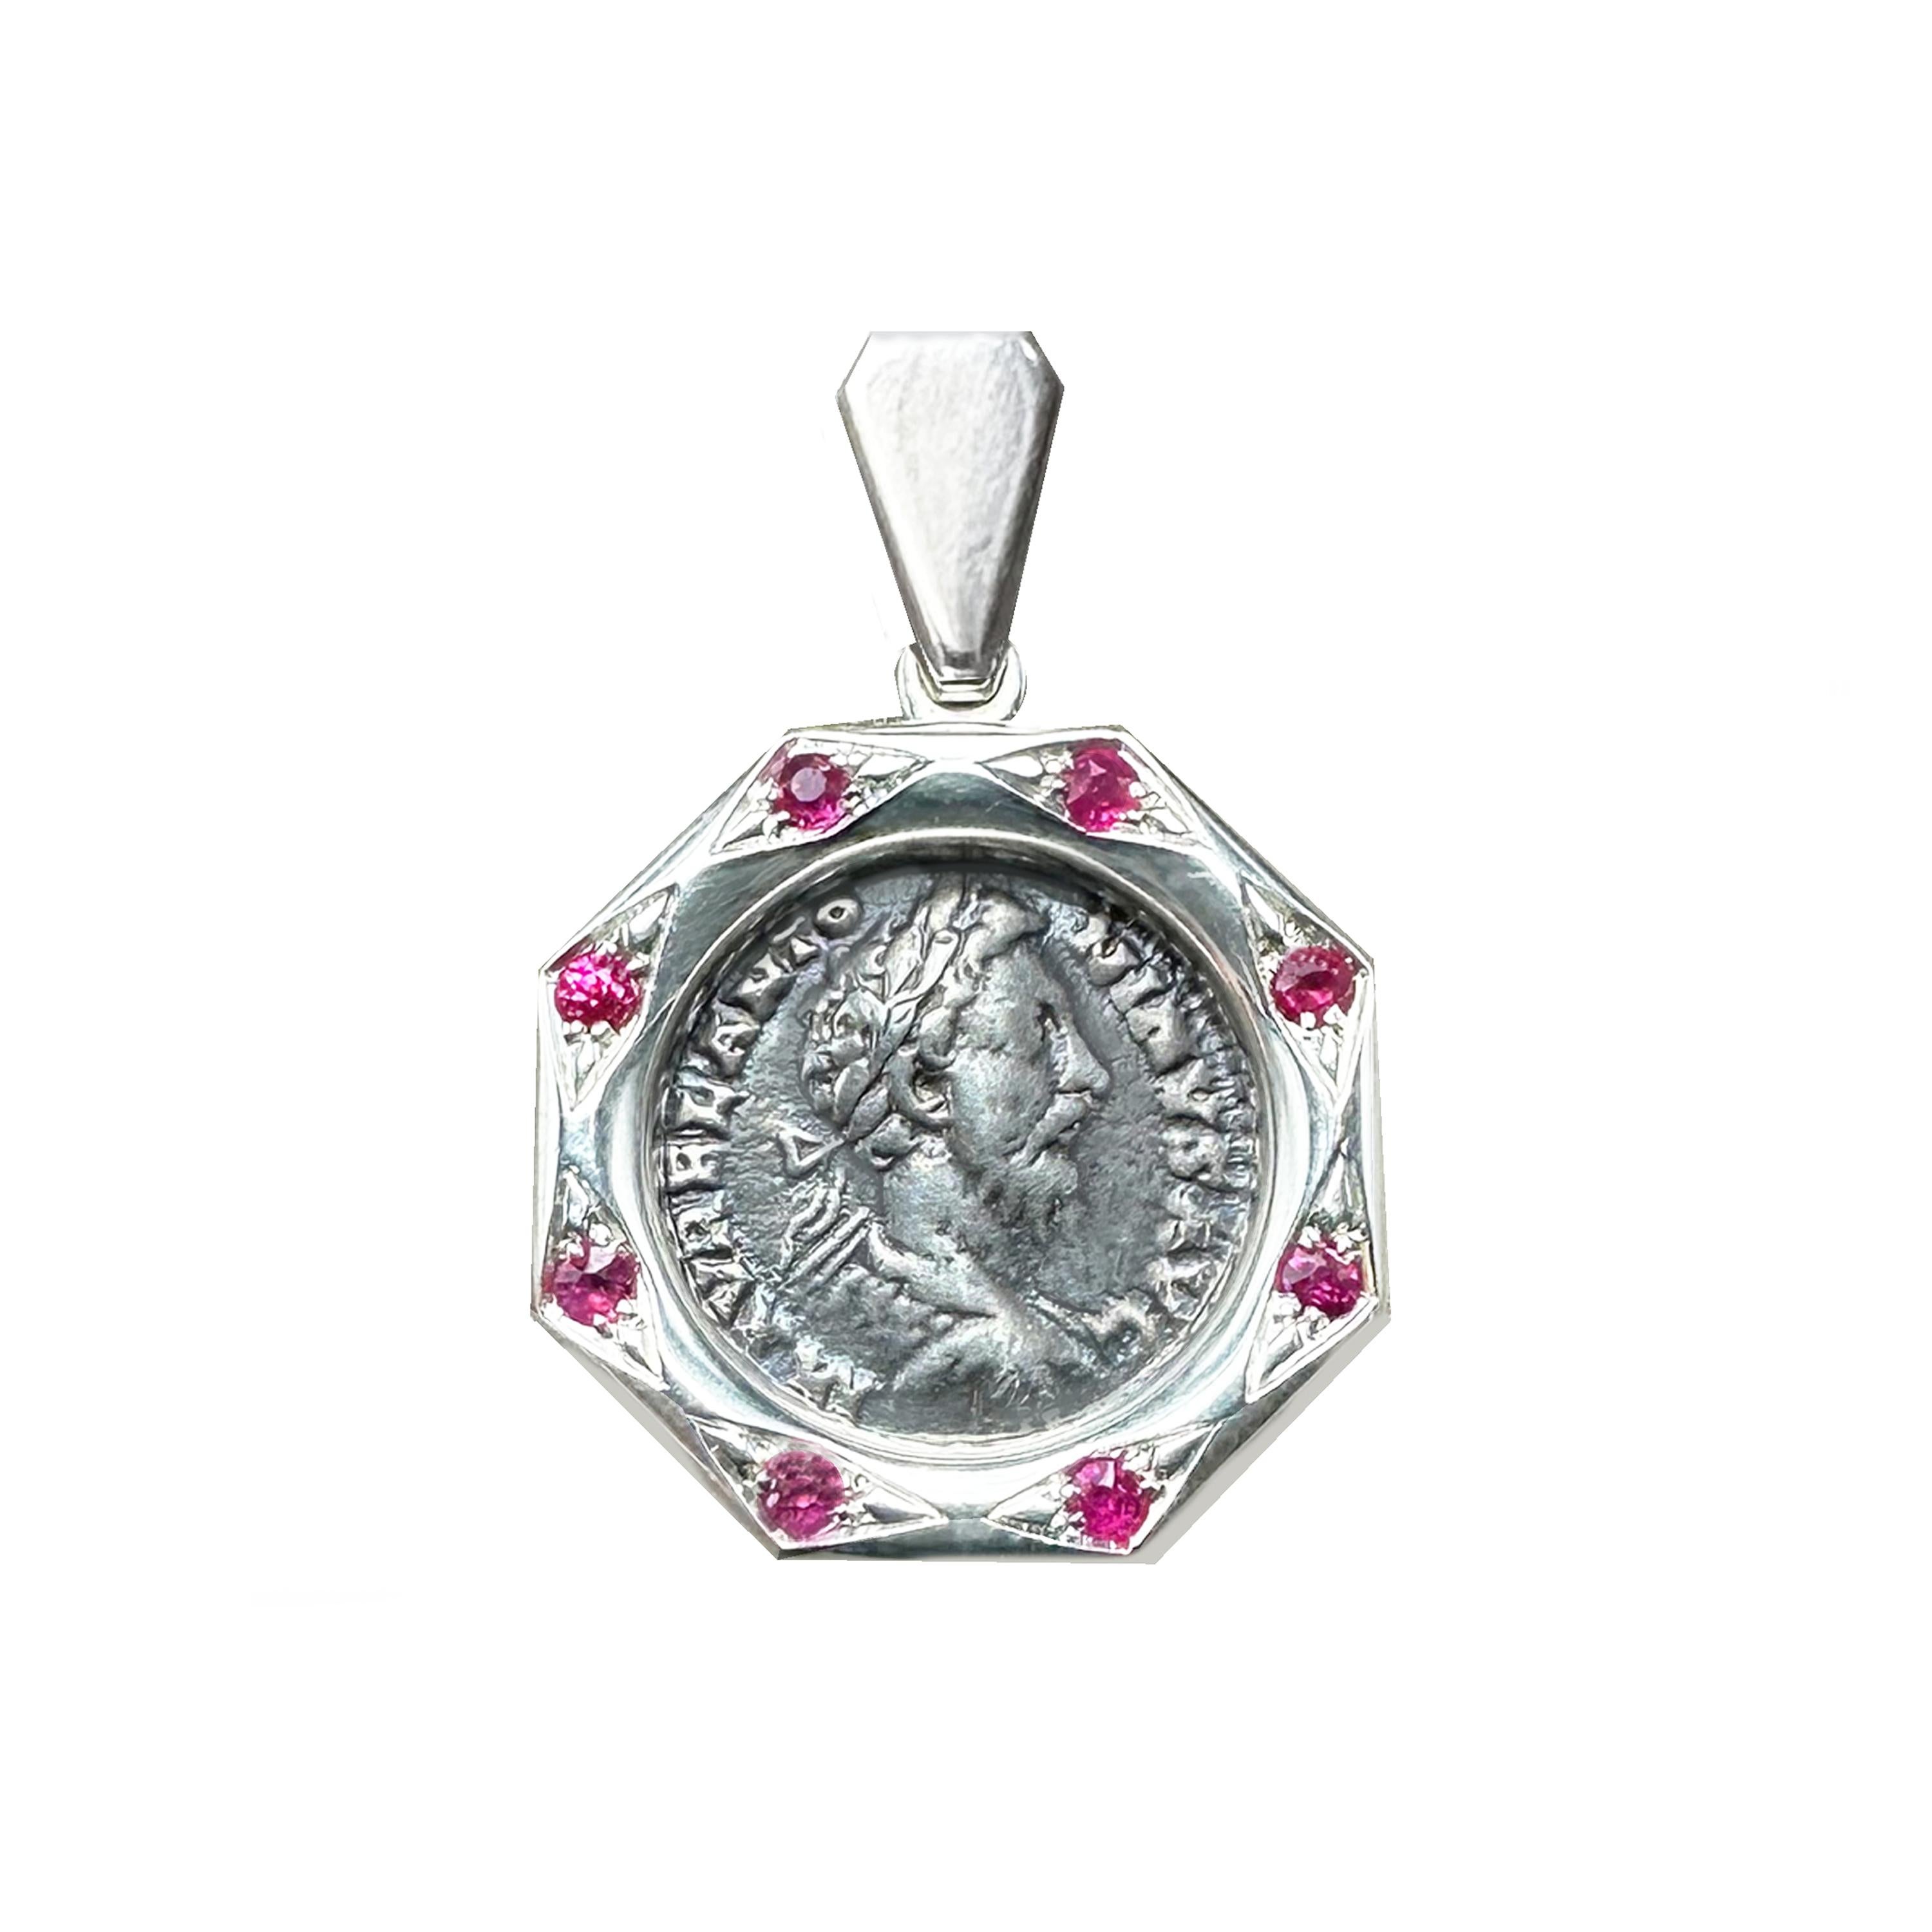 Ce pendentif en argent sterling renferme une authentique pièce de monnaie romaine datant du IIe siècle ADS, représentant l'empereur Marc Aurèle, entouré de 8 rubis. Le revers représente la déesse Fortuna assise.

Marc Aurèle, empereur de 161 à 180